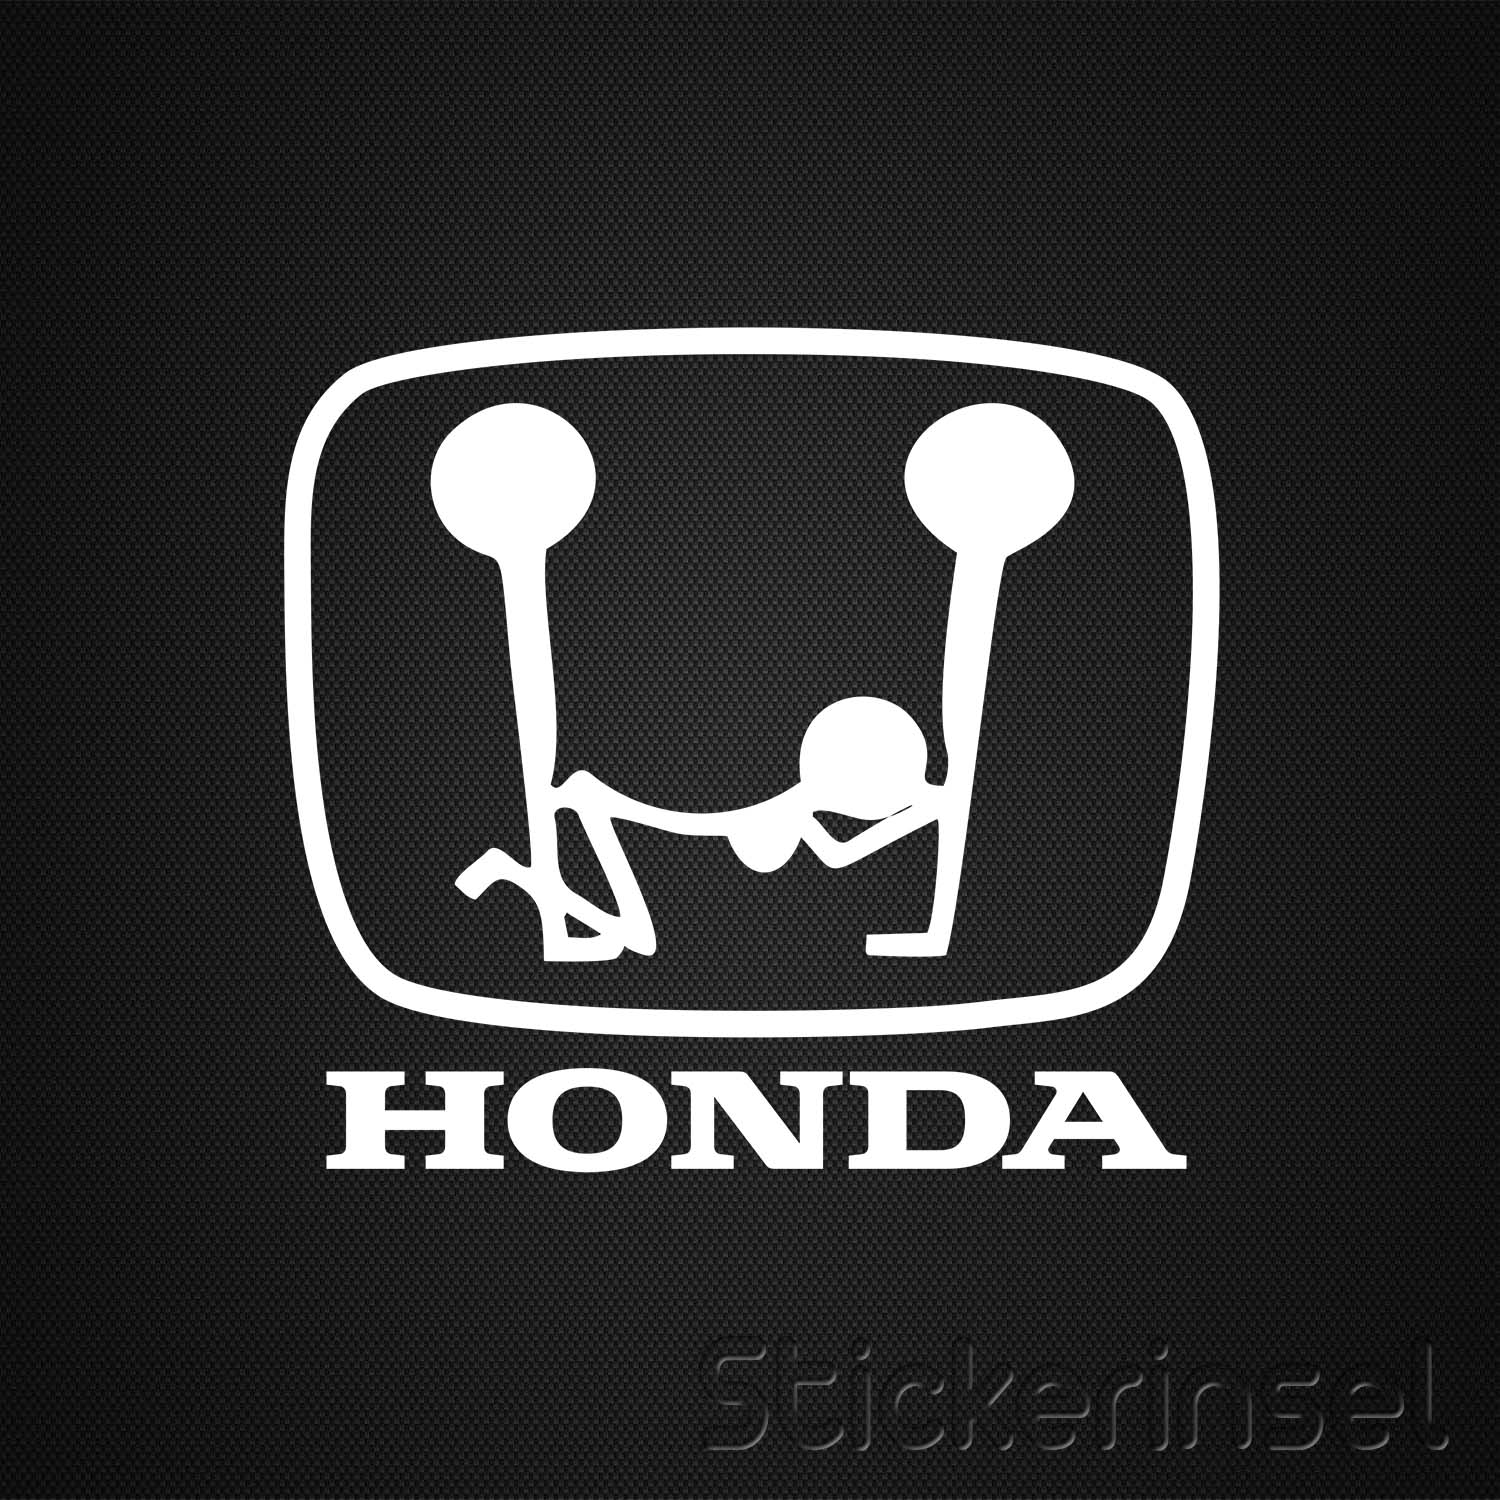 https://www.stickerinsel.at/wp-content/uploads/2016/01/Stickerinsel_Aufkleber-Honda-Dreier.jpg